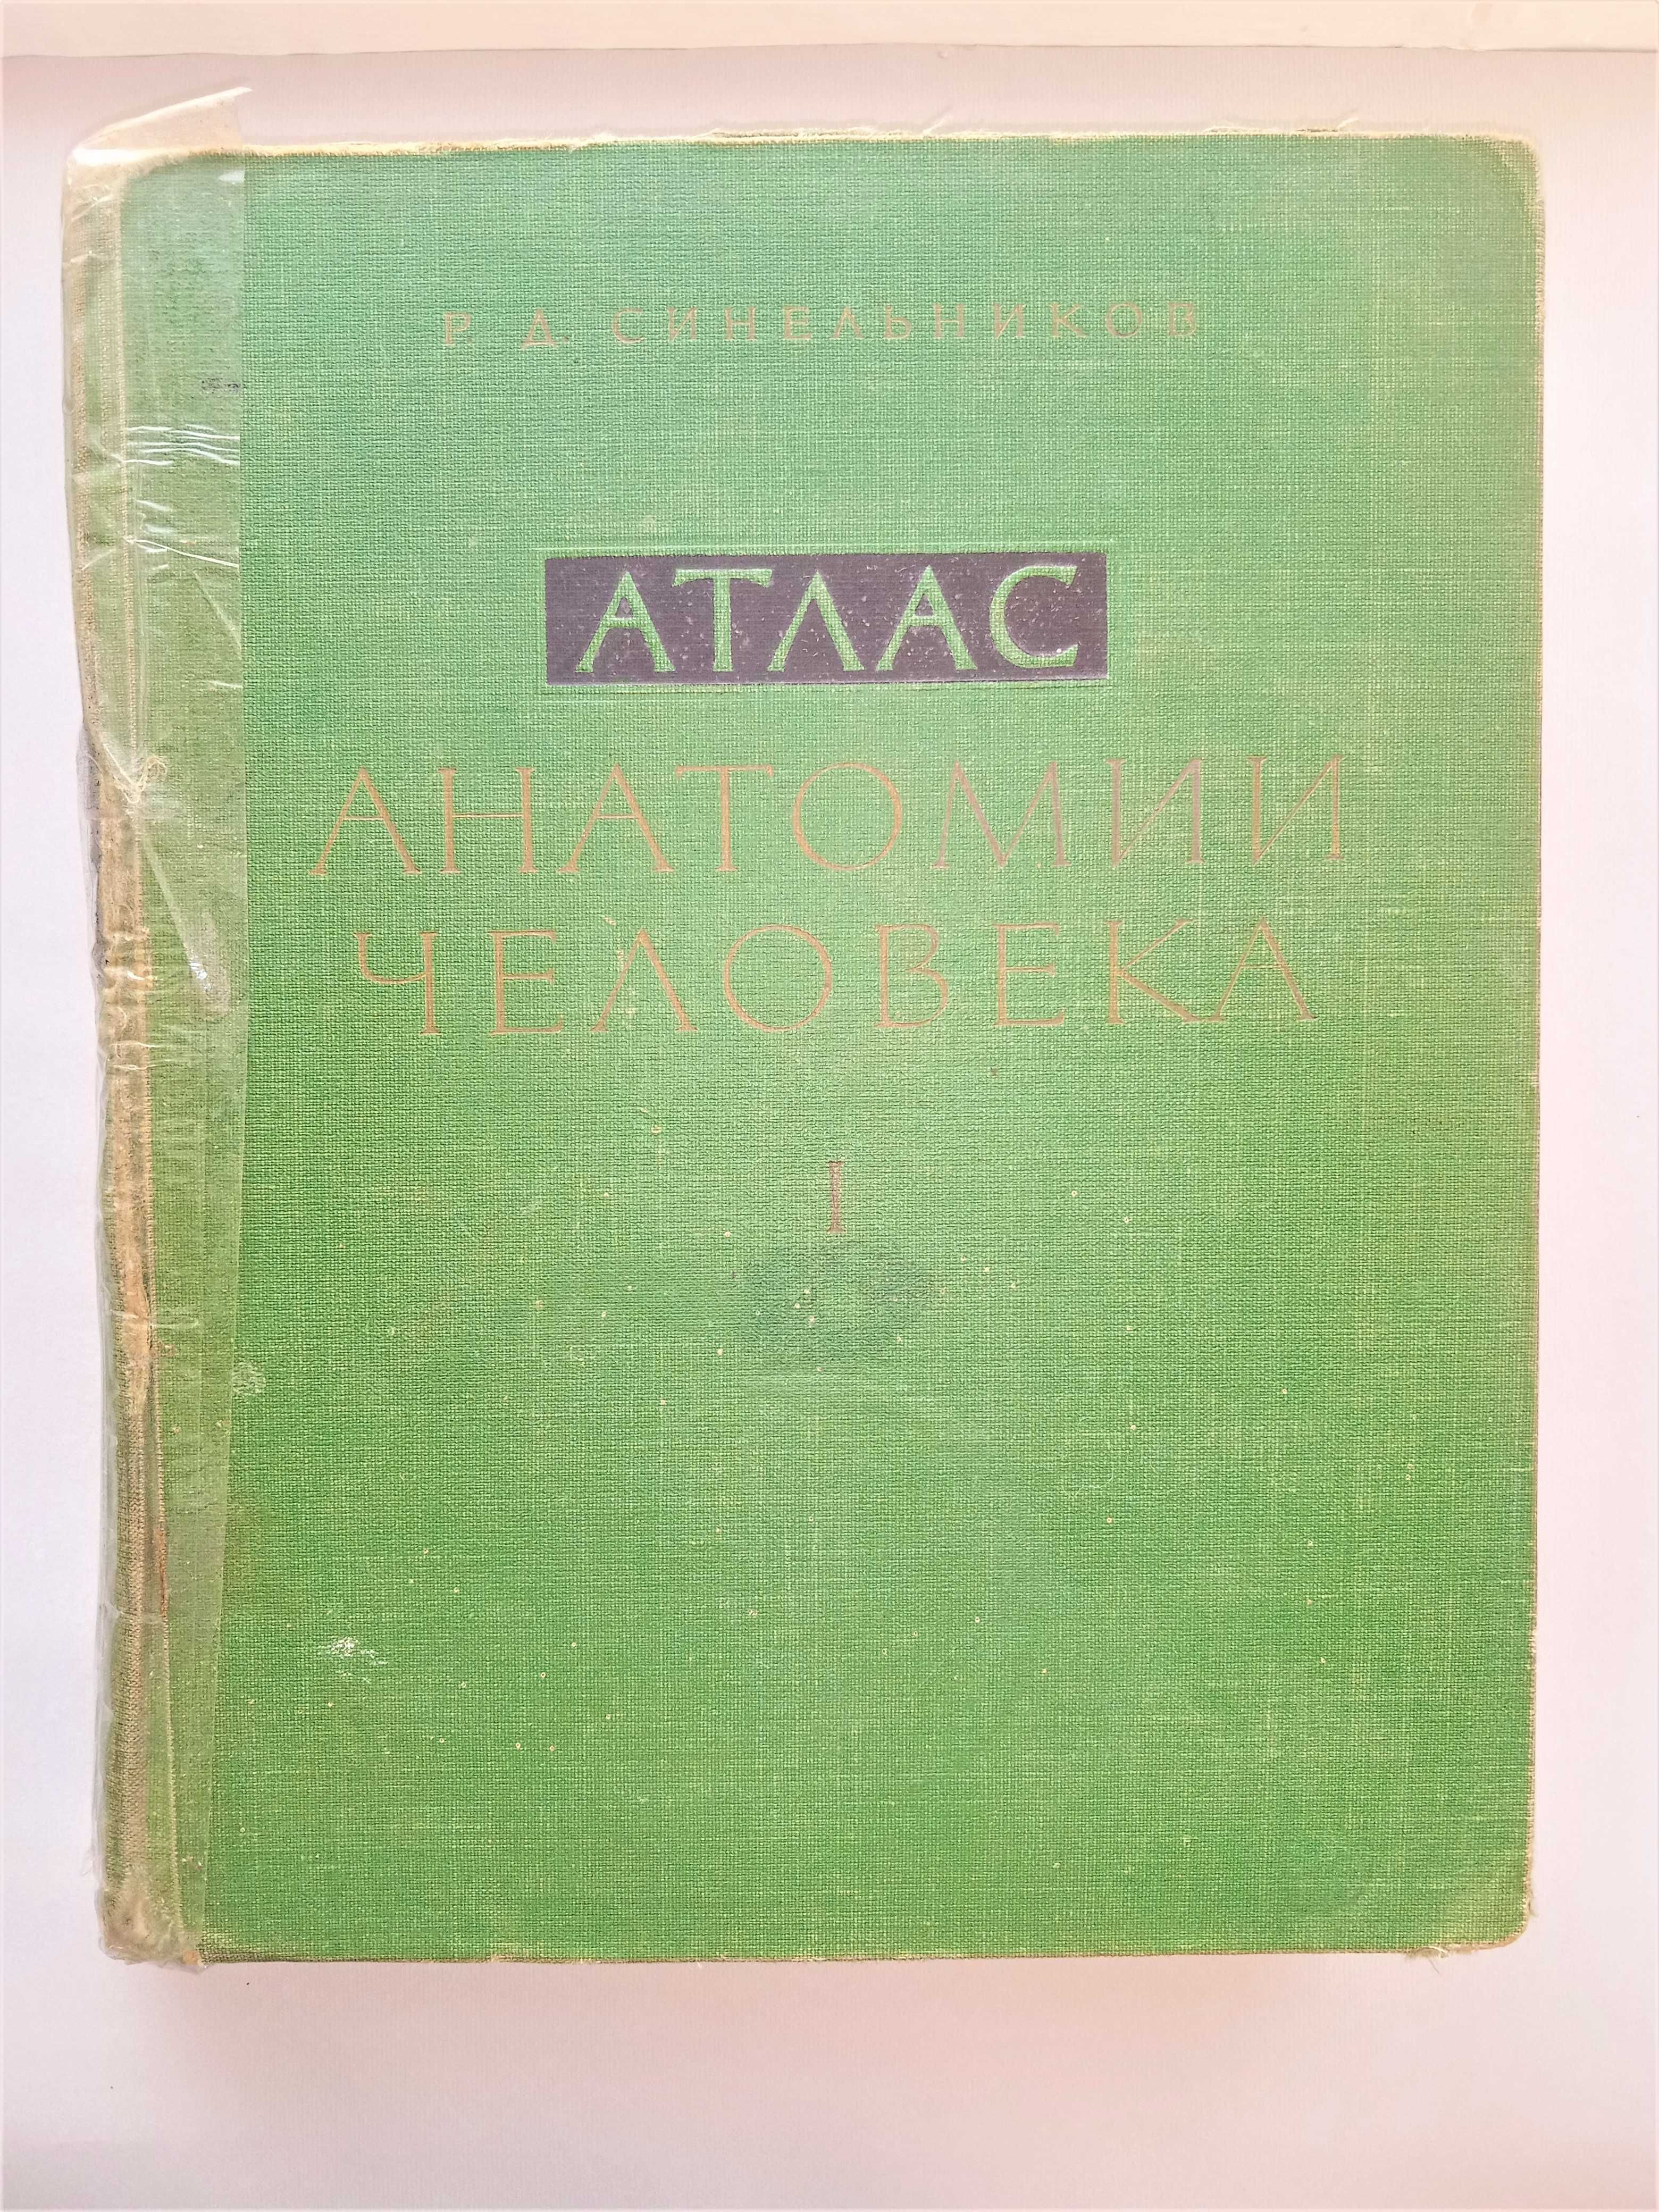 Книга художників атлас анатомії Синельников 1 том м'язи кістки 1962